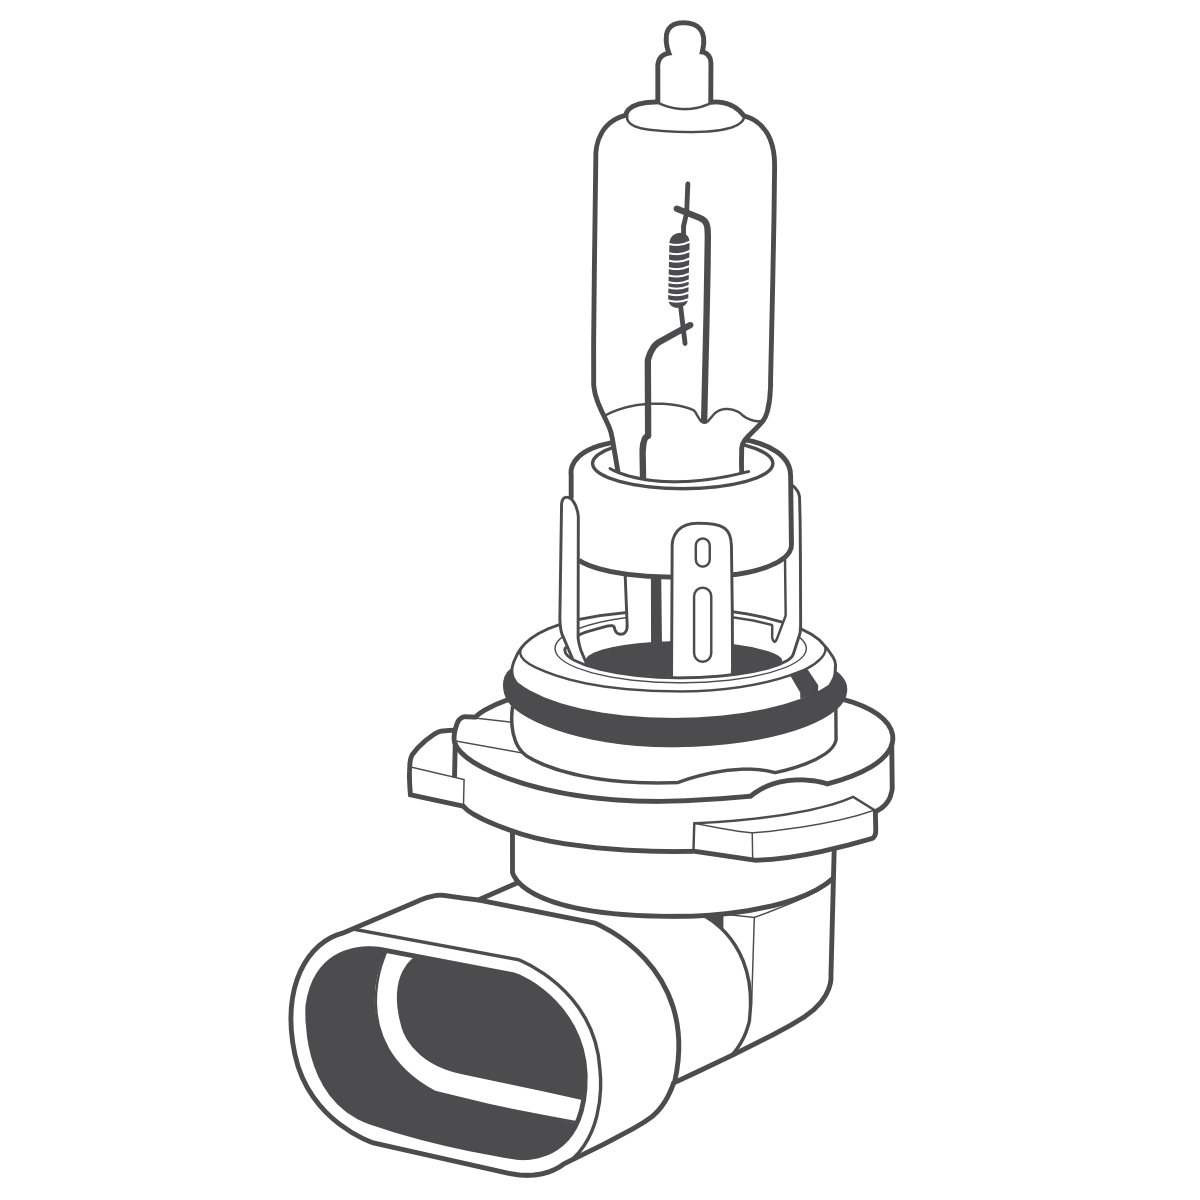 Auto-Lampen-Discount - H7 Lampen und mehr günstig kaufen - OSRAM Glühlampe  HB3 Original Line Autolampe P20d 12V 60W 9005